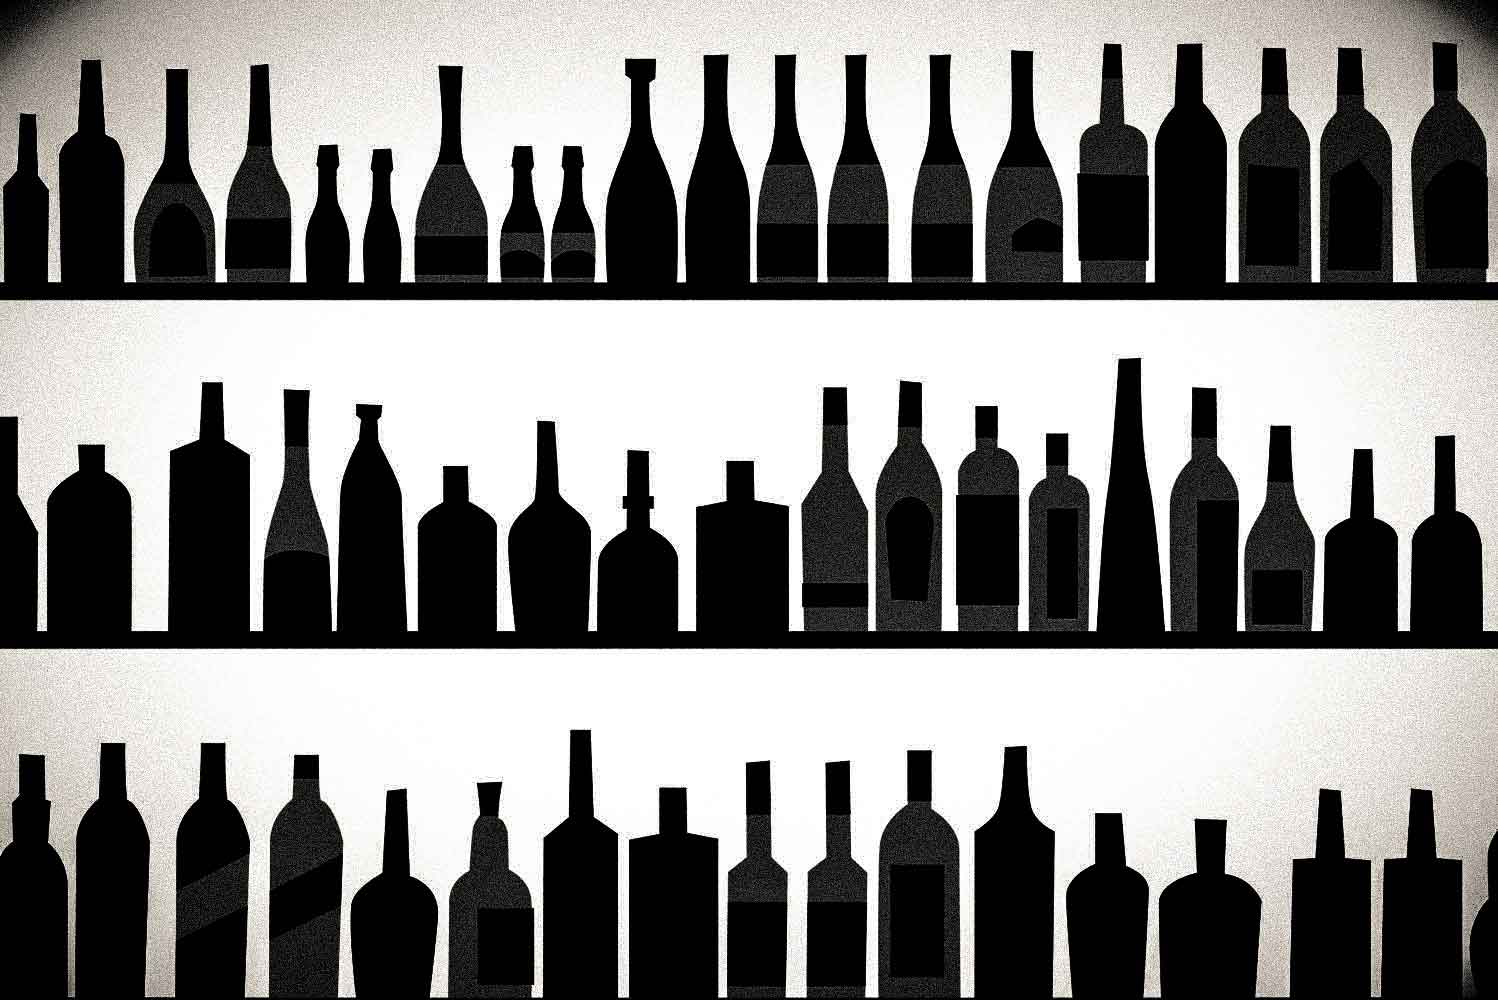 Tipos de botellas de vino